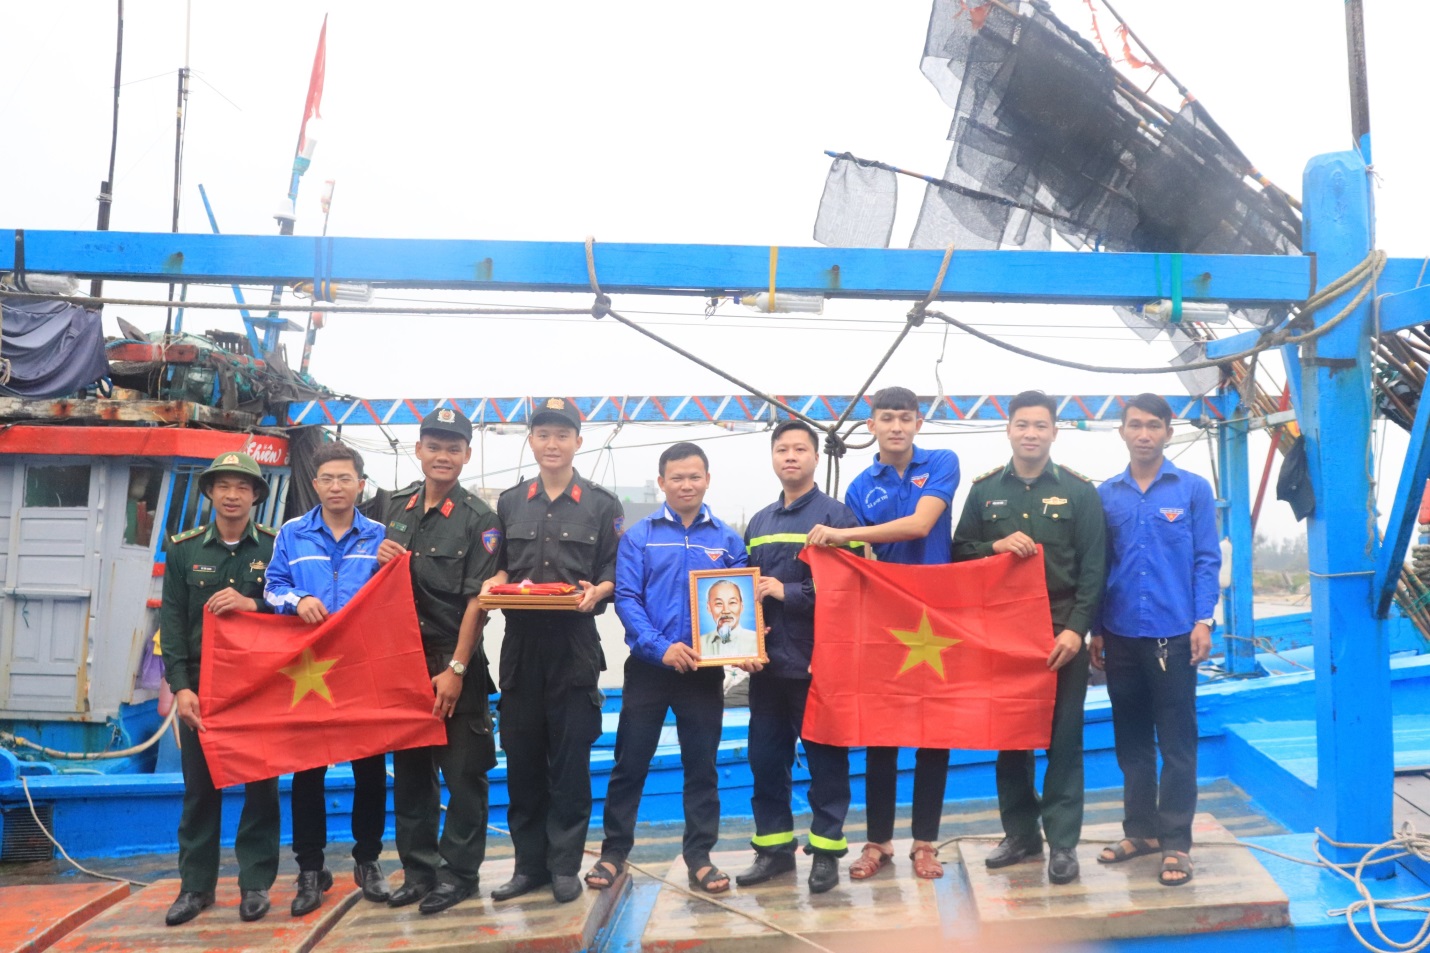 Trao cờ Tổ quốc và ảnh chân dung Chủ tịch Hồ Chí Minh cho ngư dân vươn khơi bám biển